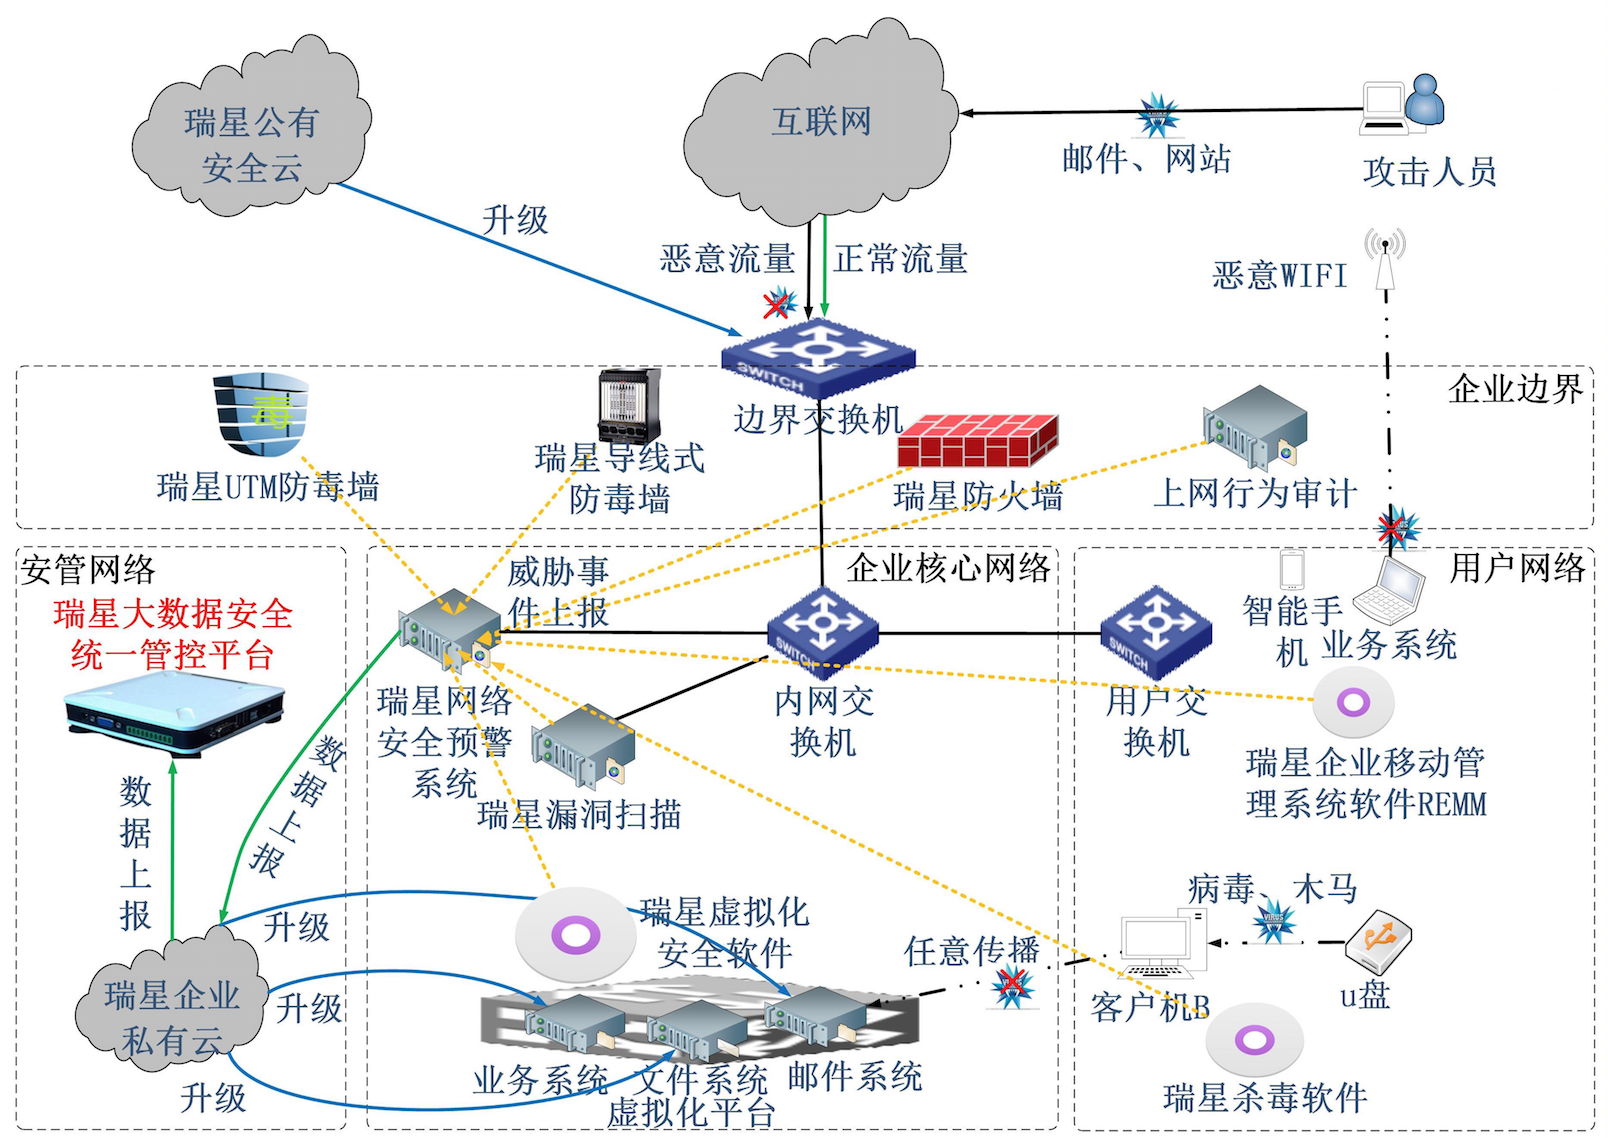 瑞星出席第六届中国国际智能电网建设大会 用技术推动中国网络信息安全建设 - 瑞星网